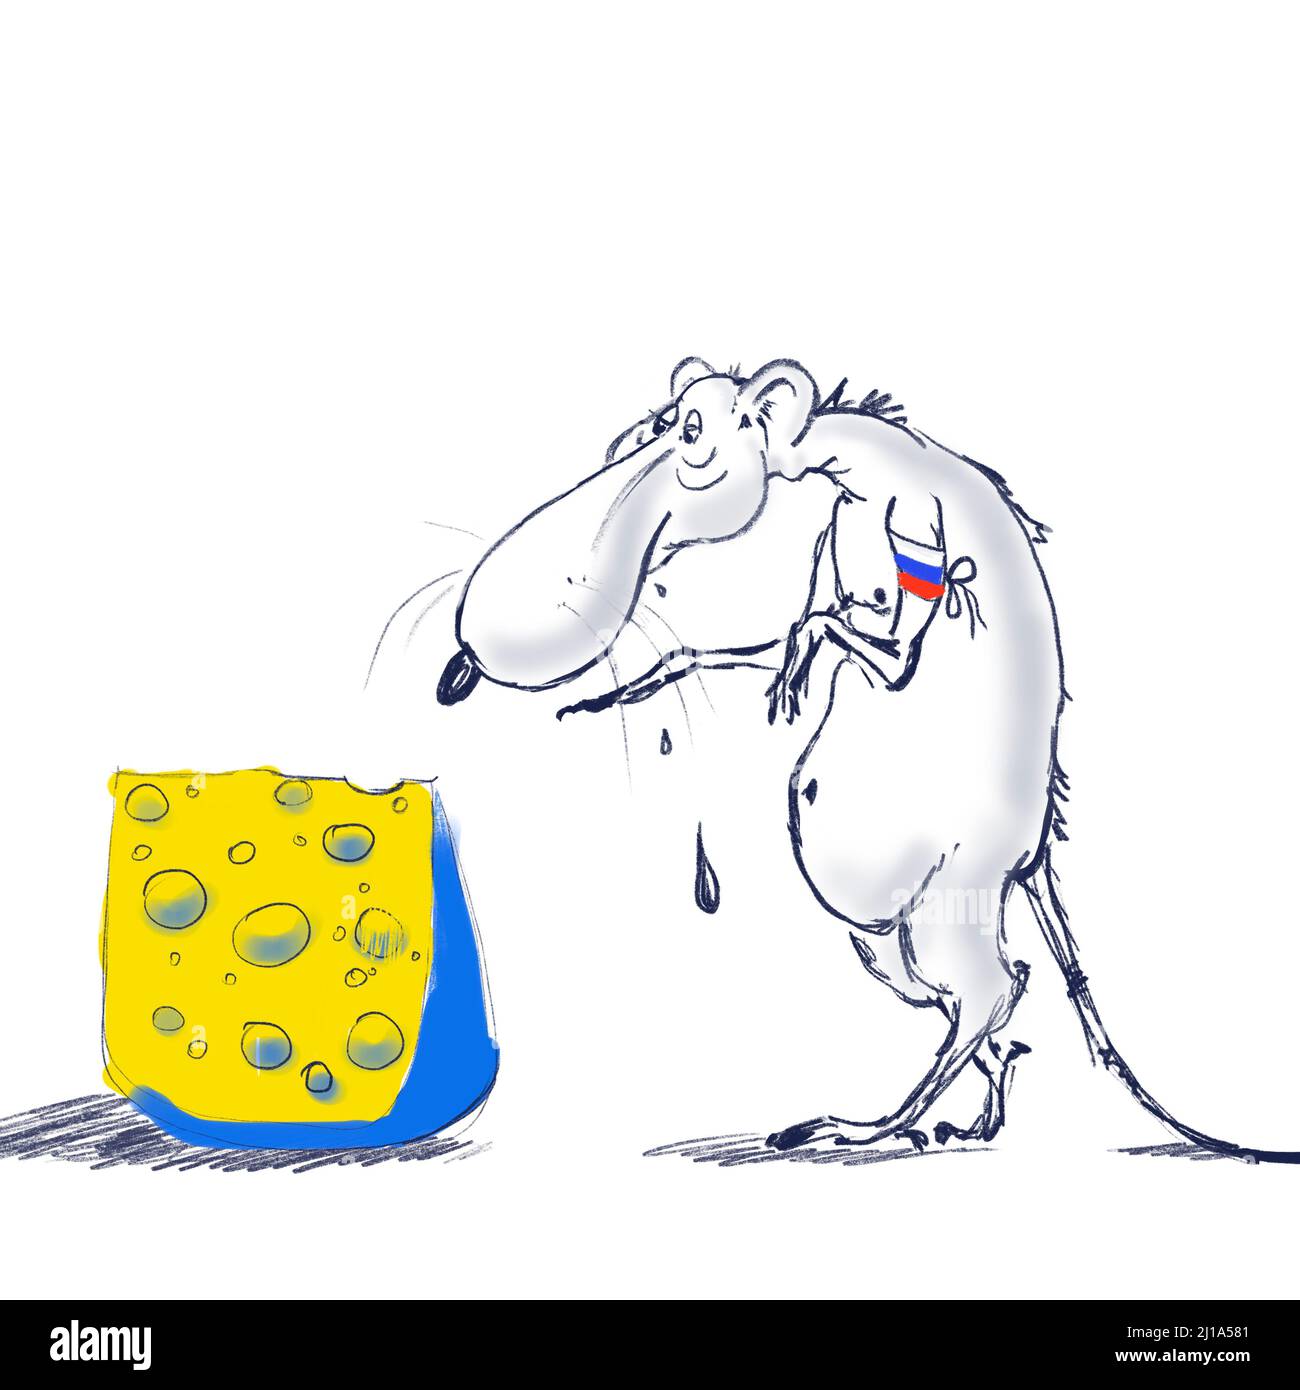 Attacco perfidioso al concetto Ucraina, cartone animato. Un ratto che intende mangiare per rubare il formaggio. Illustrazione nei colori della bandiera Ucraina Foto Stock